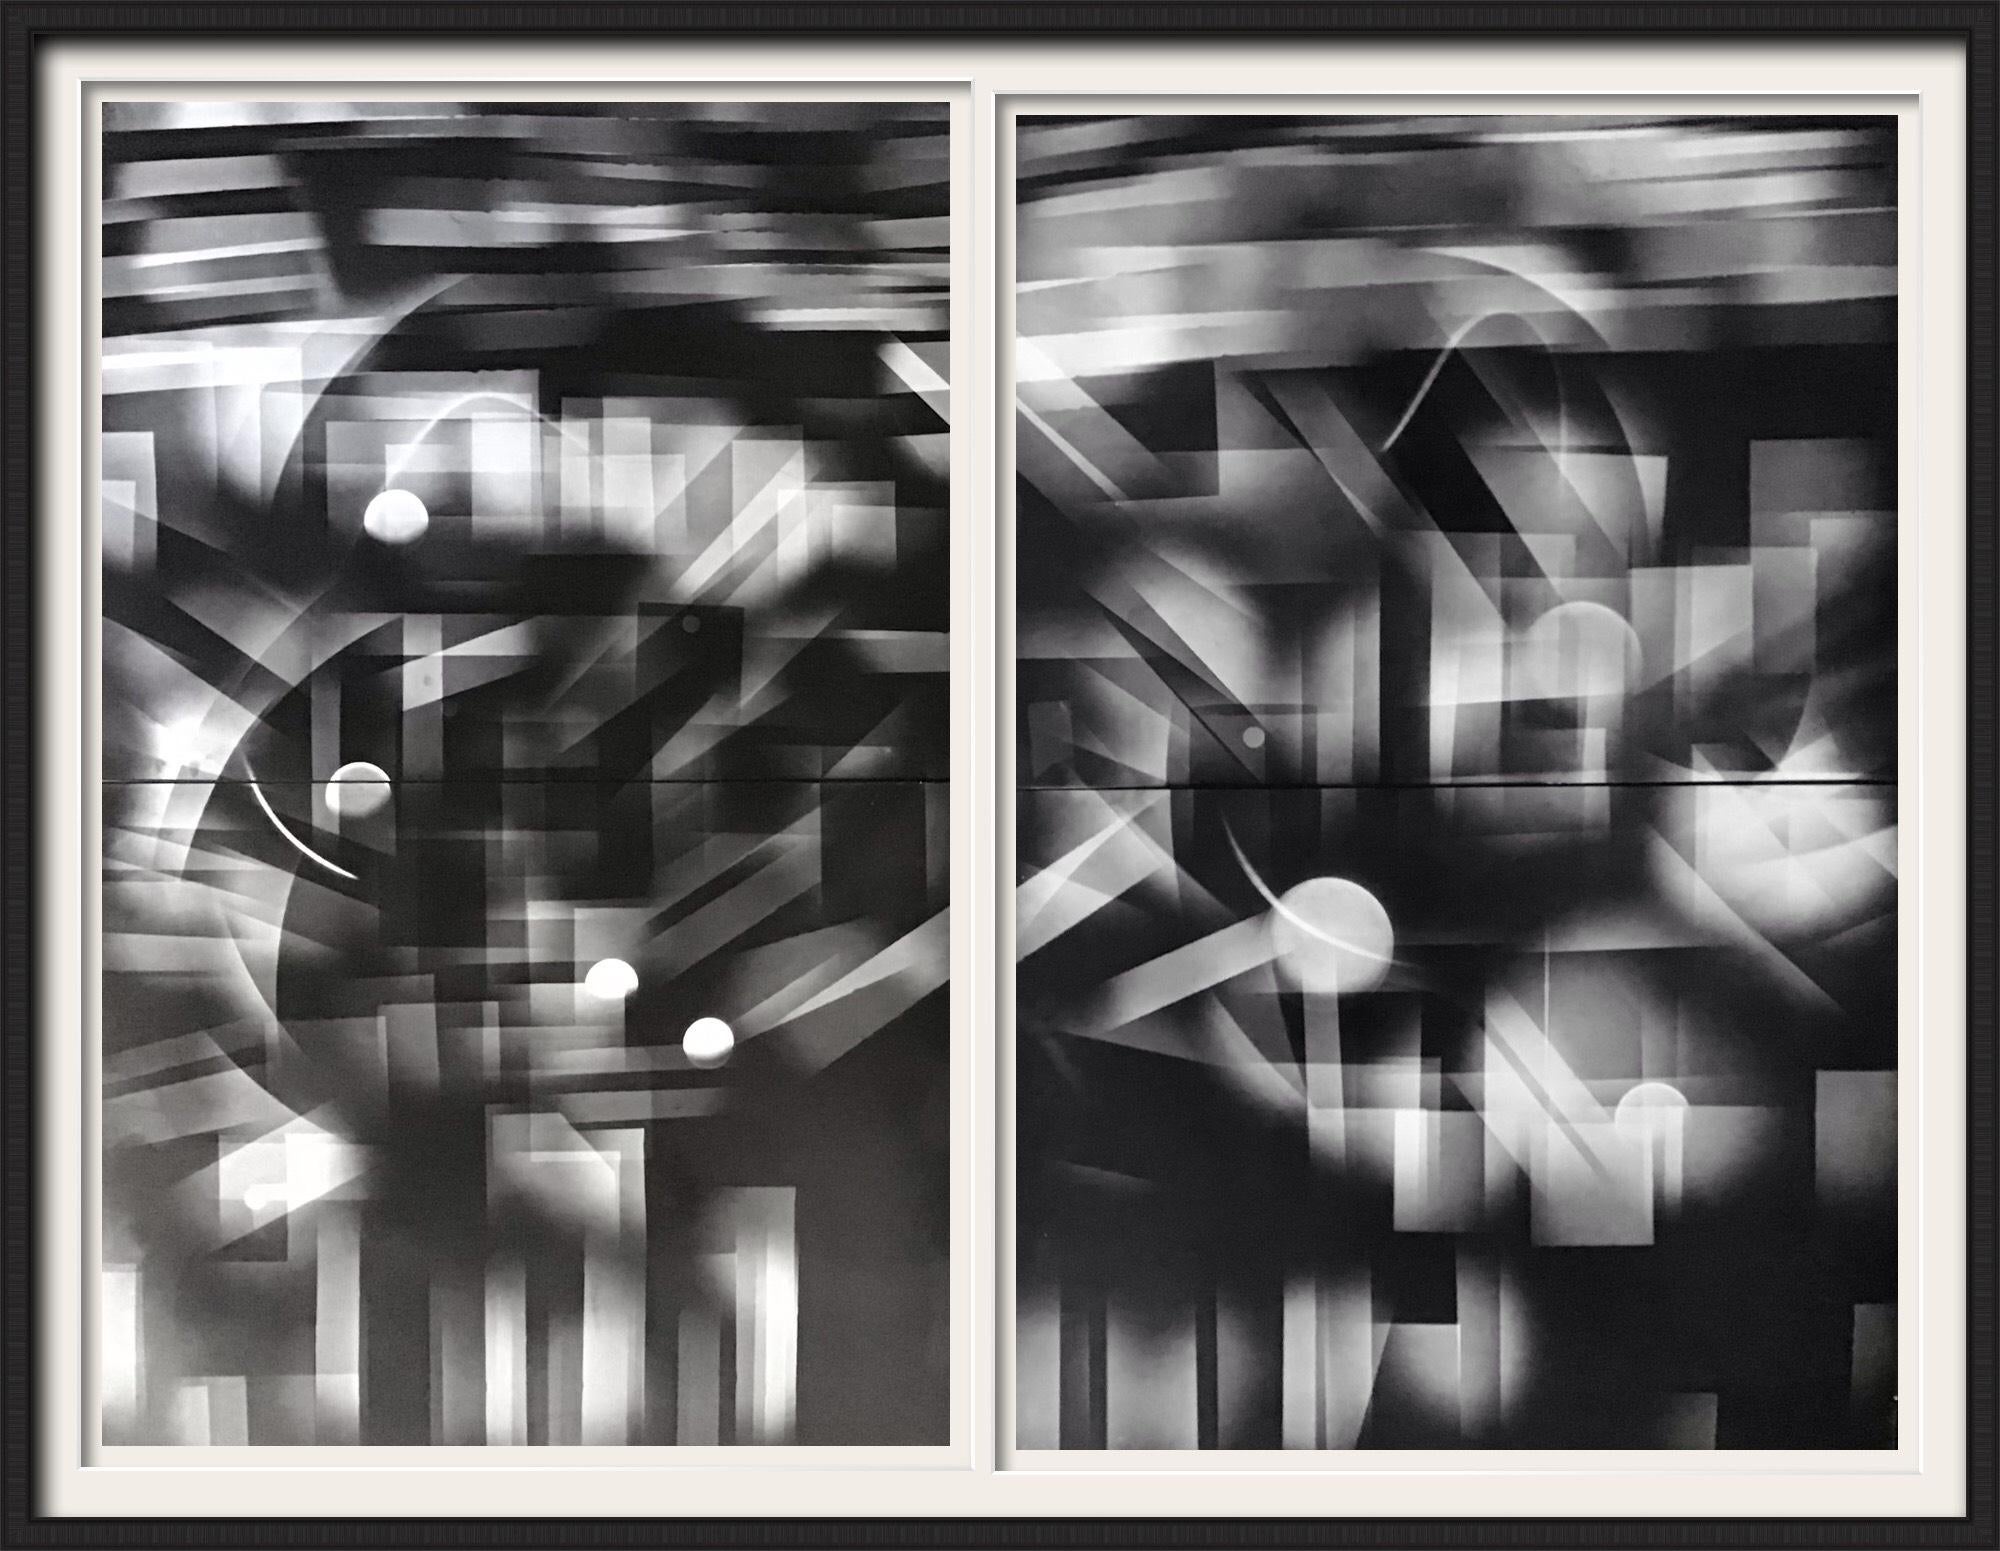 Michael G Jackson Black and White Photograph – Schwarzer und weißer abstrakter psychedelischer Kunstdruck von New York City und dem Hudson